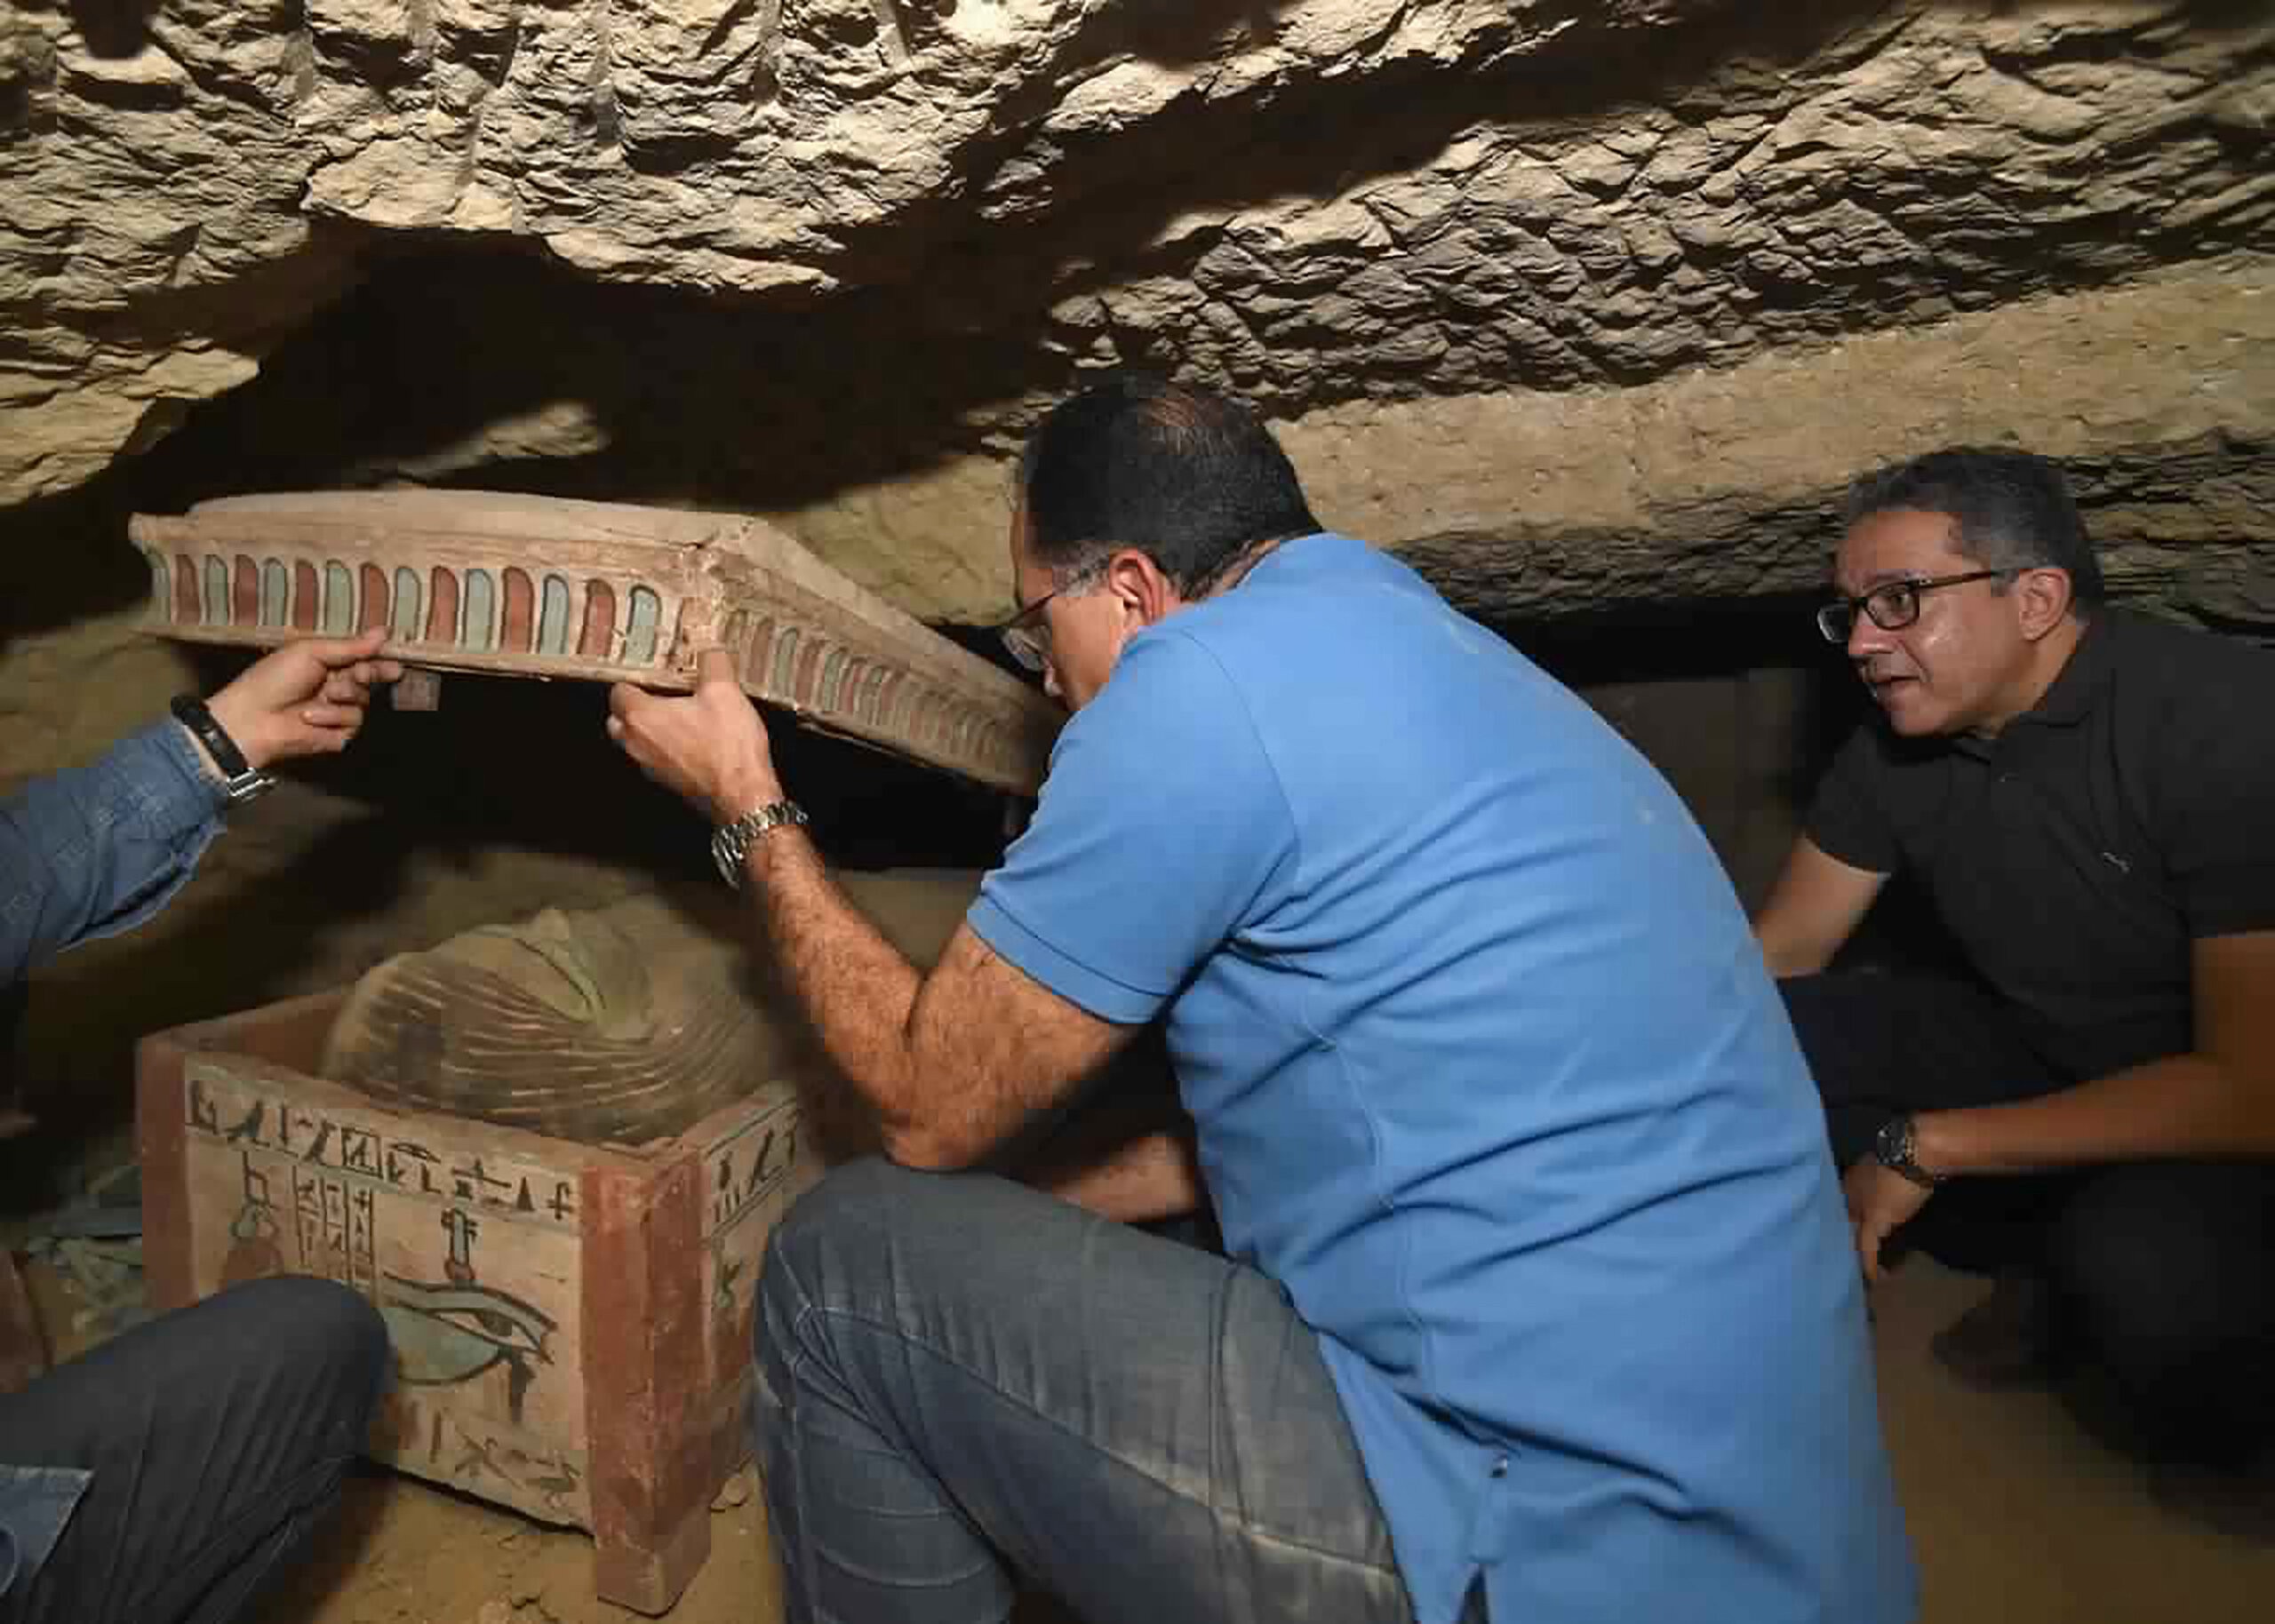 Tumbas foram enterradas há mais de 2,5 mil anos na região (Foto: Ministry of Tourism and Antiquities وزارة السياحة والآثار)